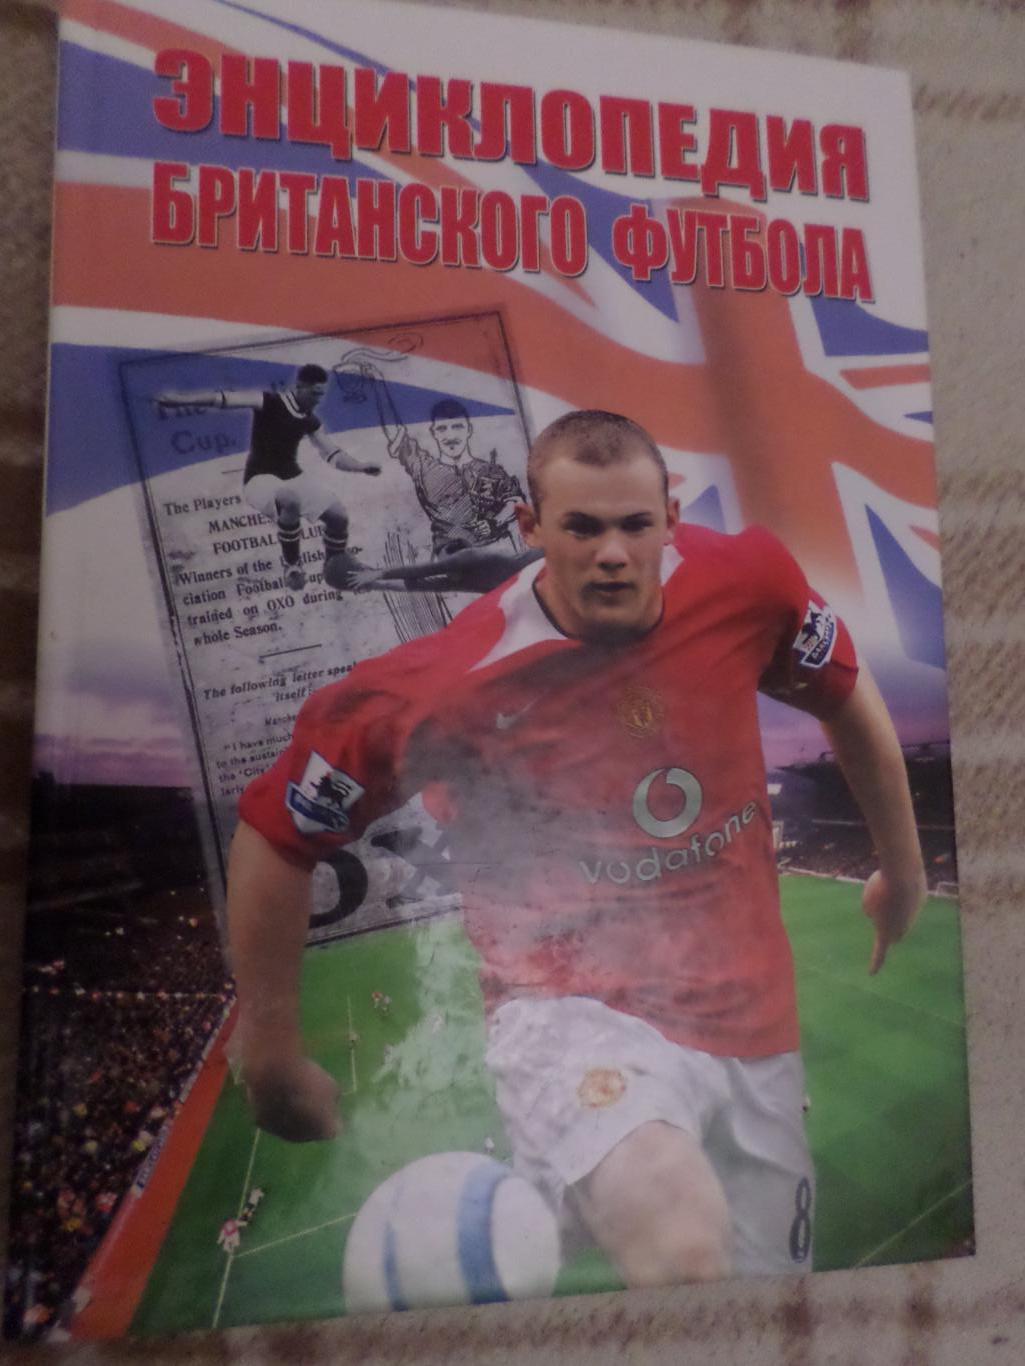 Энциклопедия британского футбола 2006 г